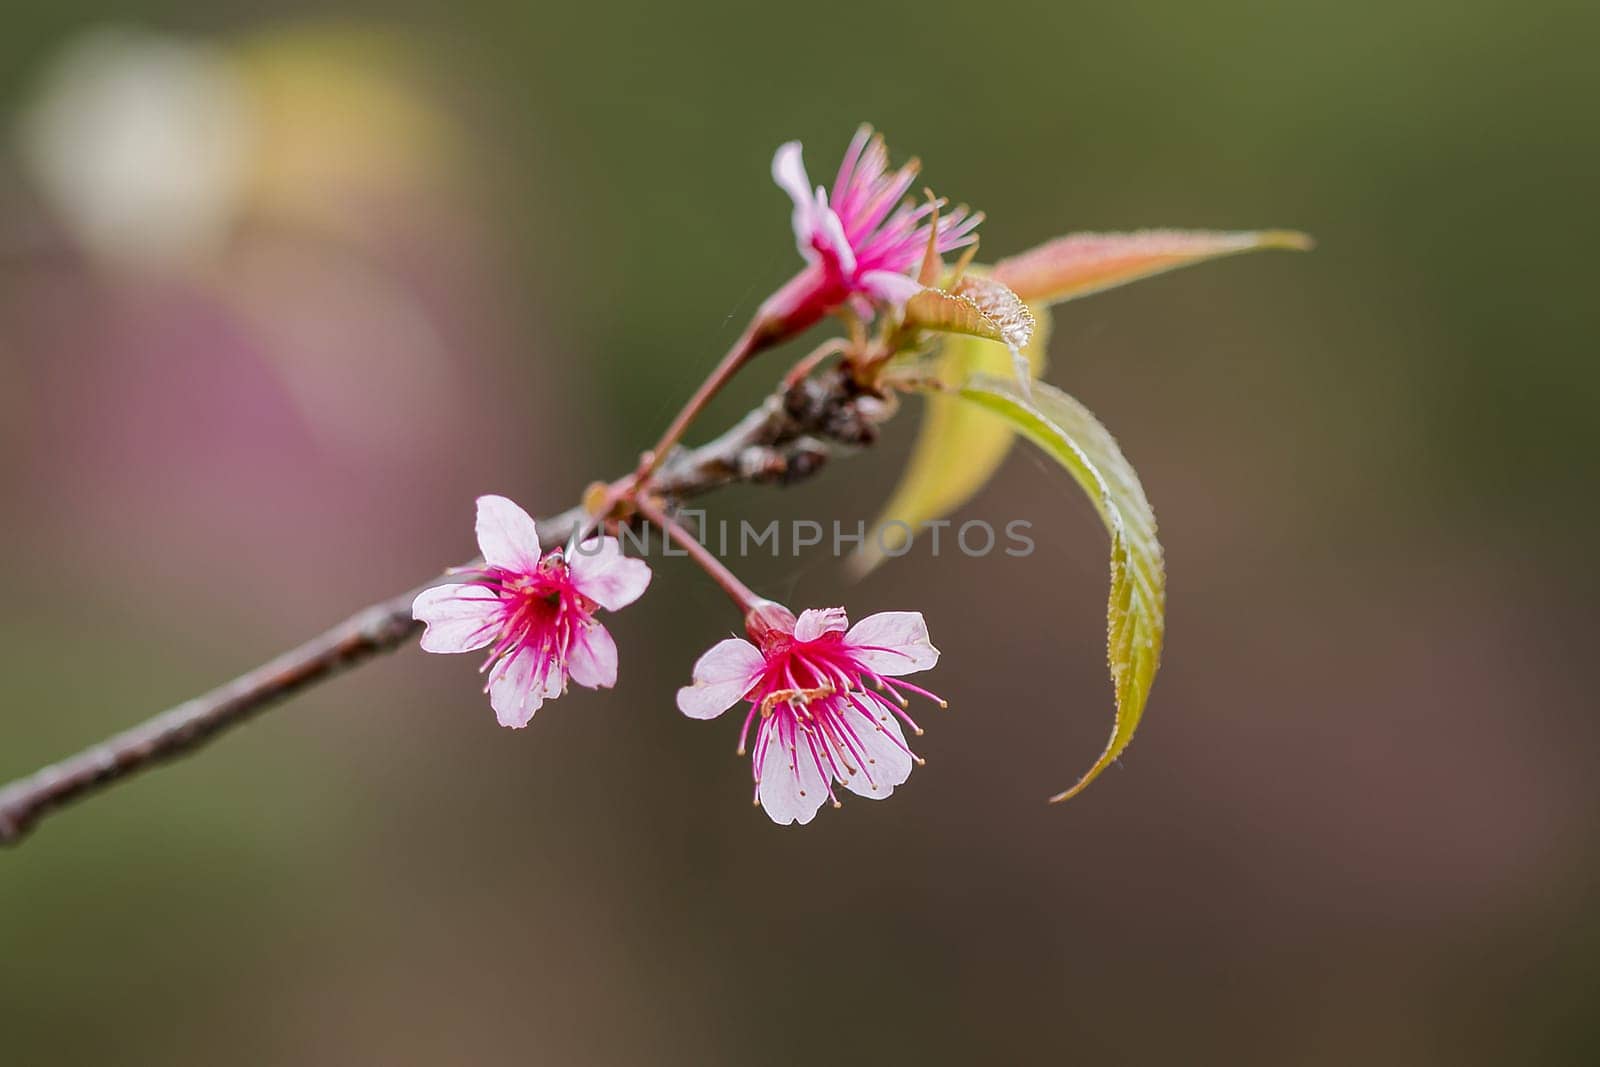 Prunus cerasoides in nature by Puripatt